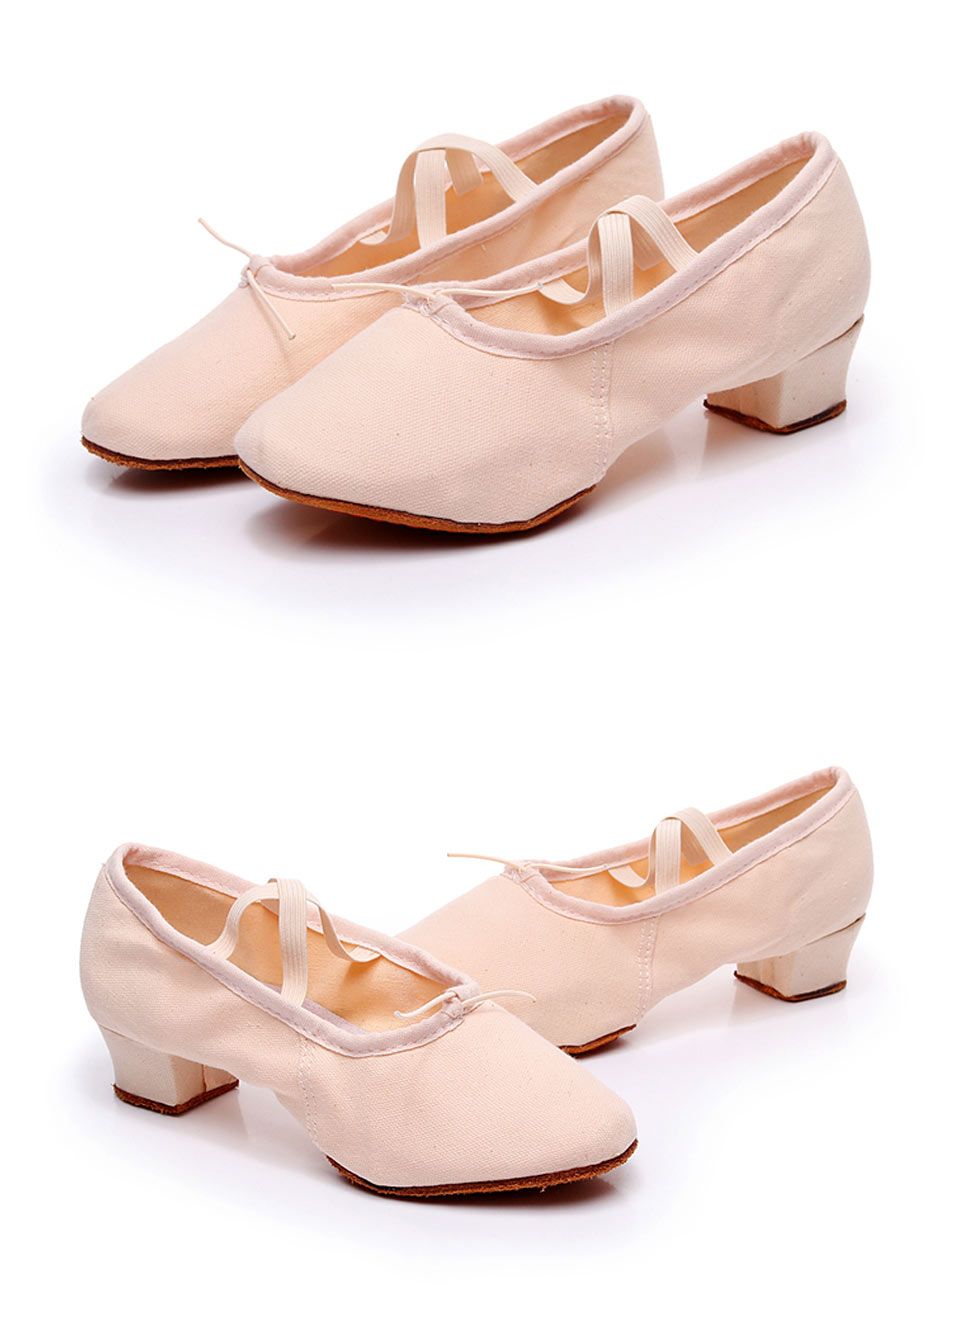 come4buy.com-Damskie buty do tańca Dziewczęce buty baletowe do salsy jazzowej